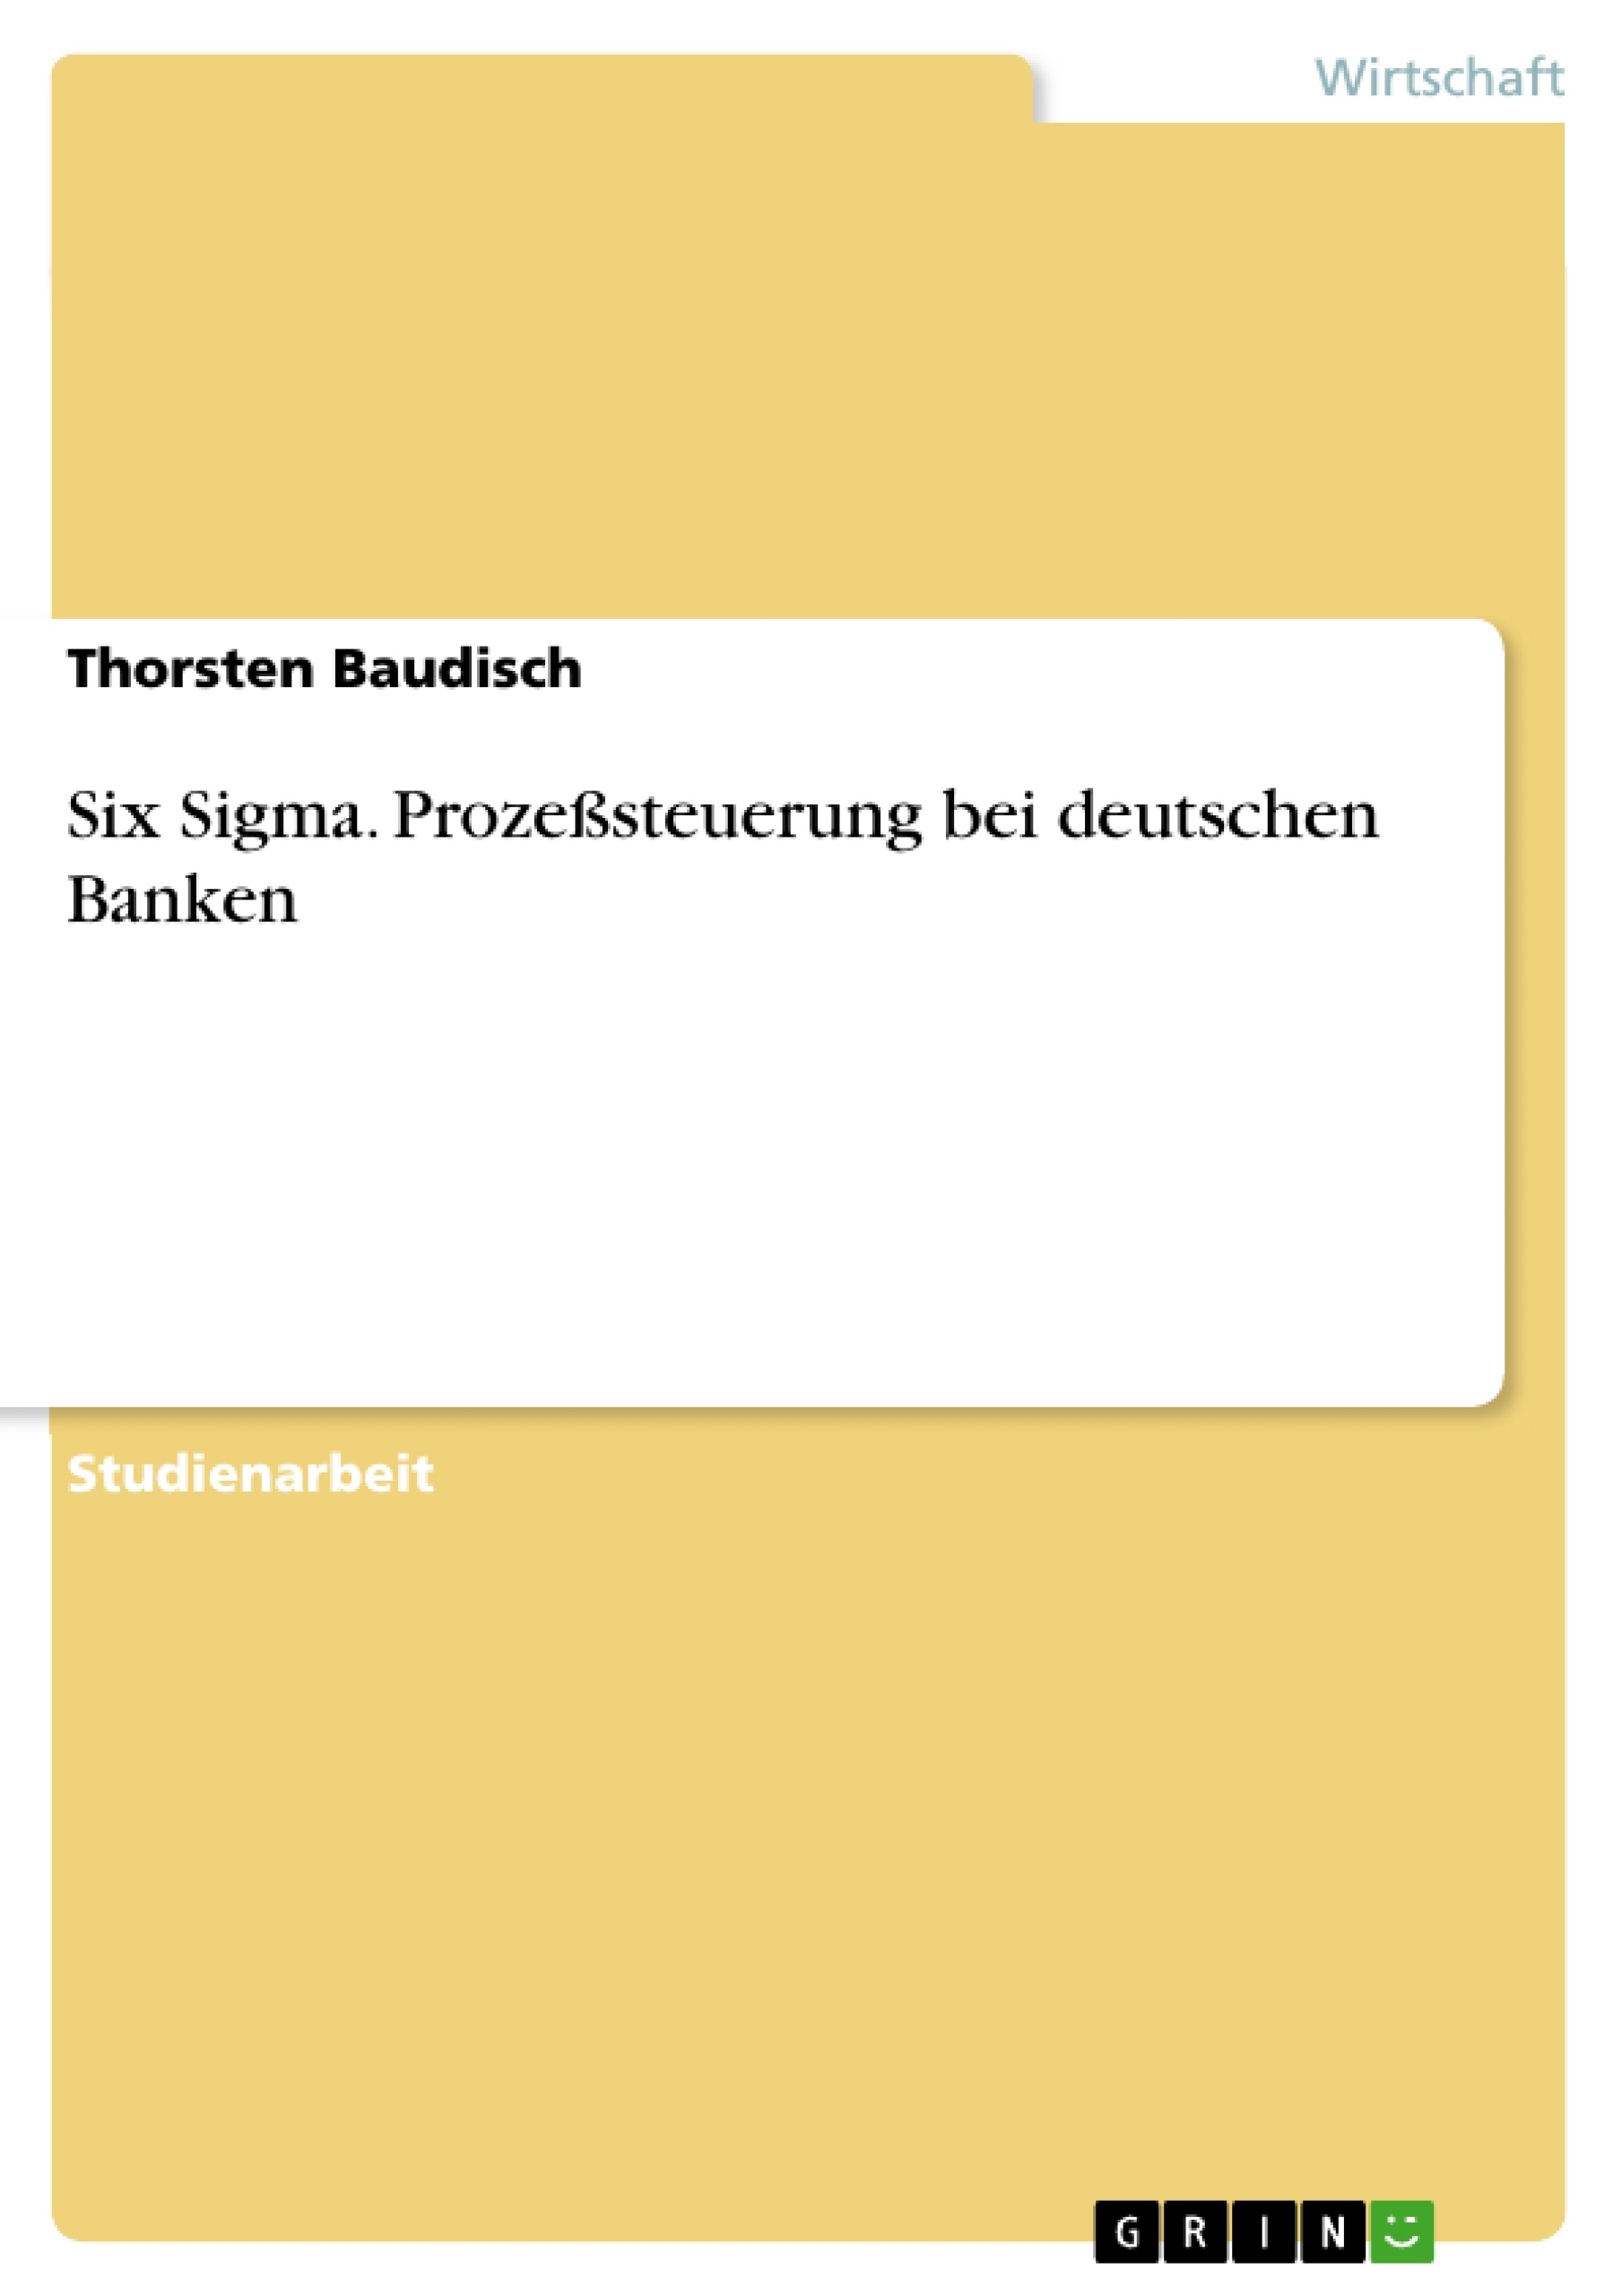 Título: Six Sigma. Prozeßsteuerung bei deutschen Banken